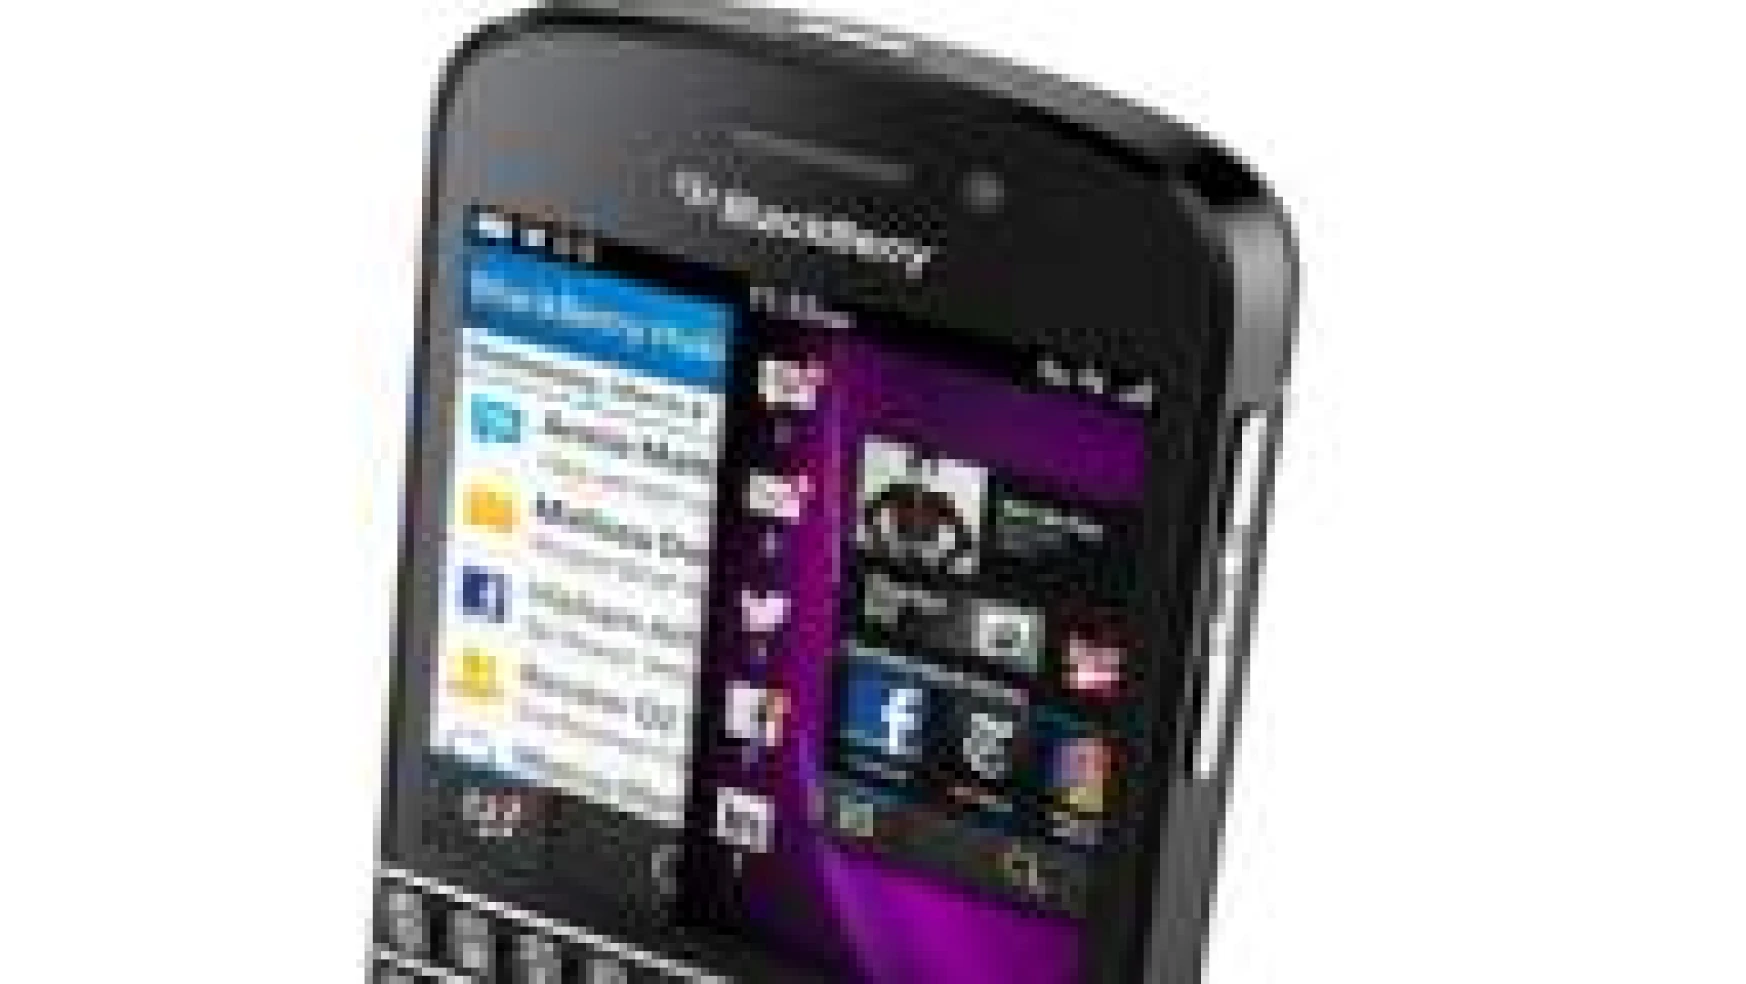 Blackberry yeni modeli ile şaşırttı!